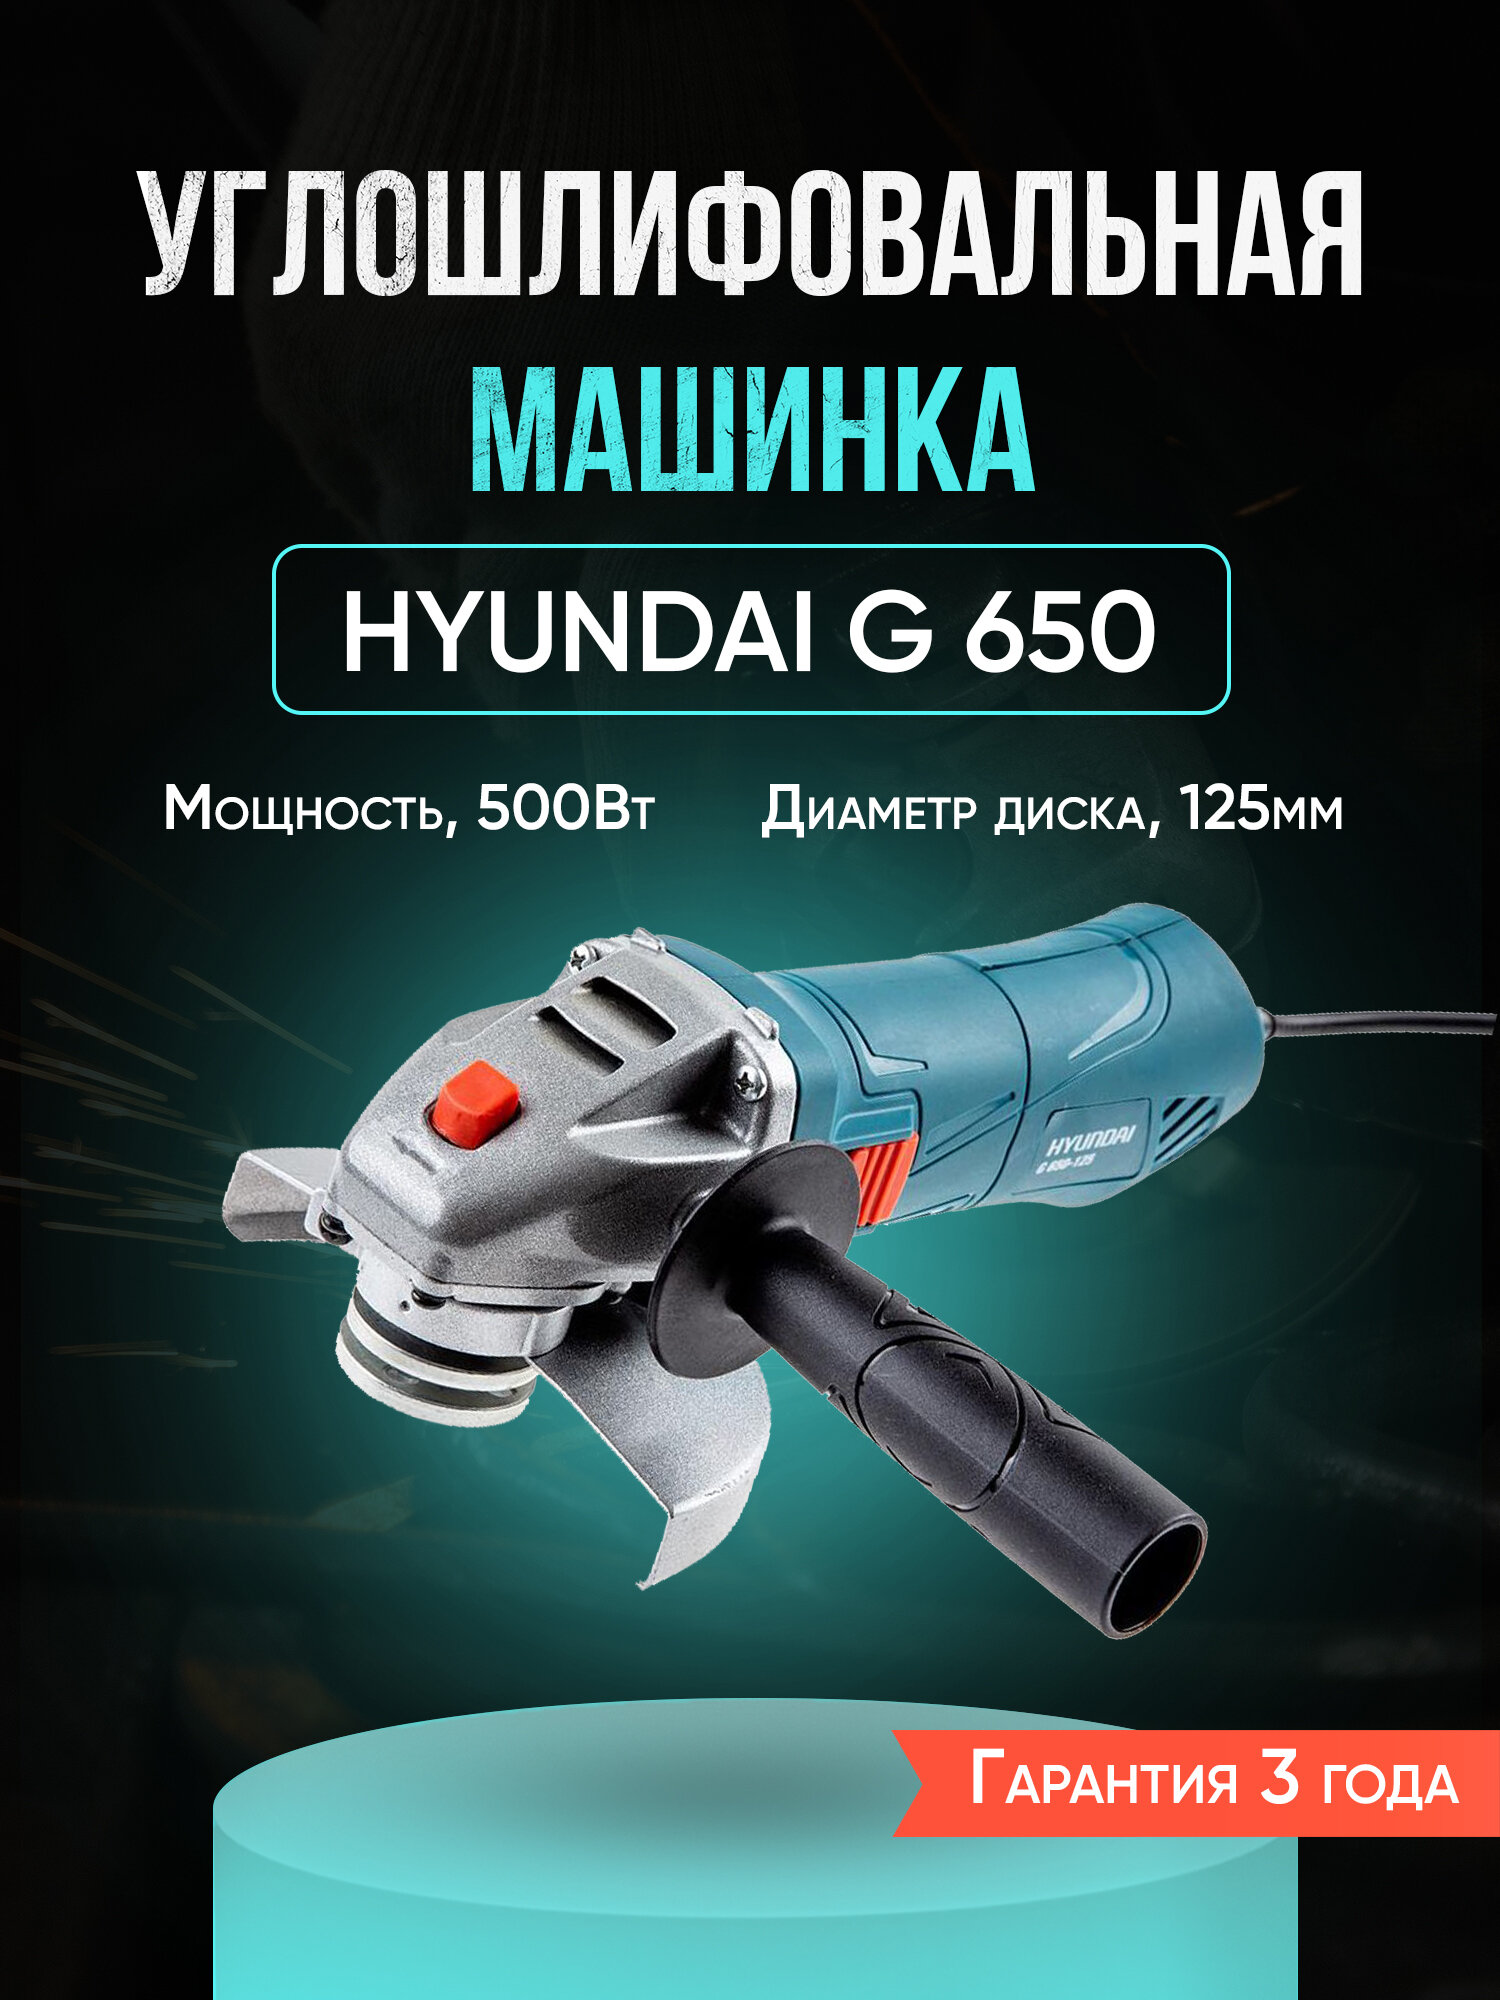 Углошлифовальная машина, УШМ / Болгарка HYUNDAI G 650-125, для диска 125мм, электроинструмент шлифмашина для дома, строительства и ремонта